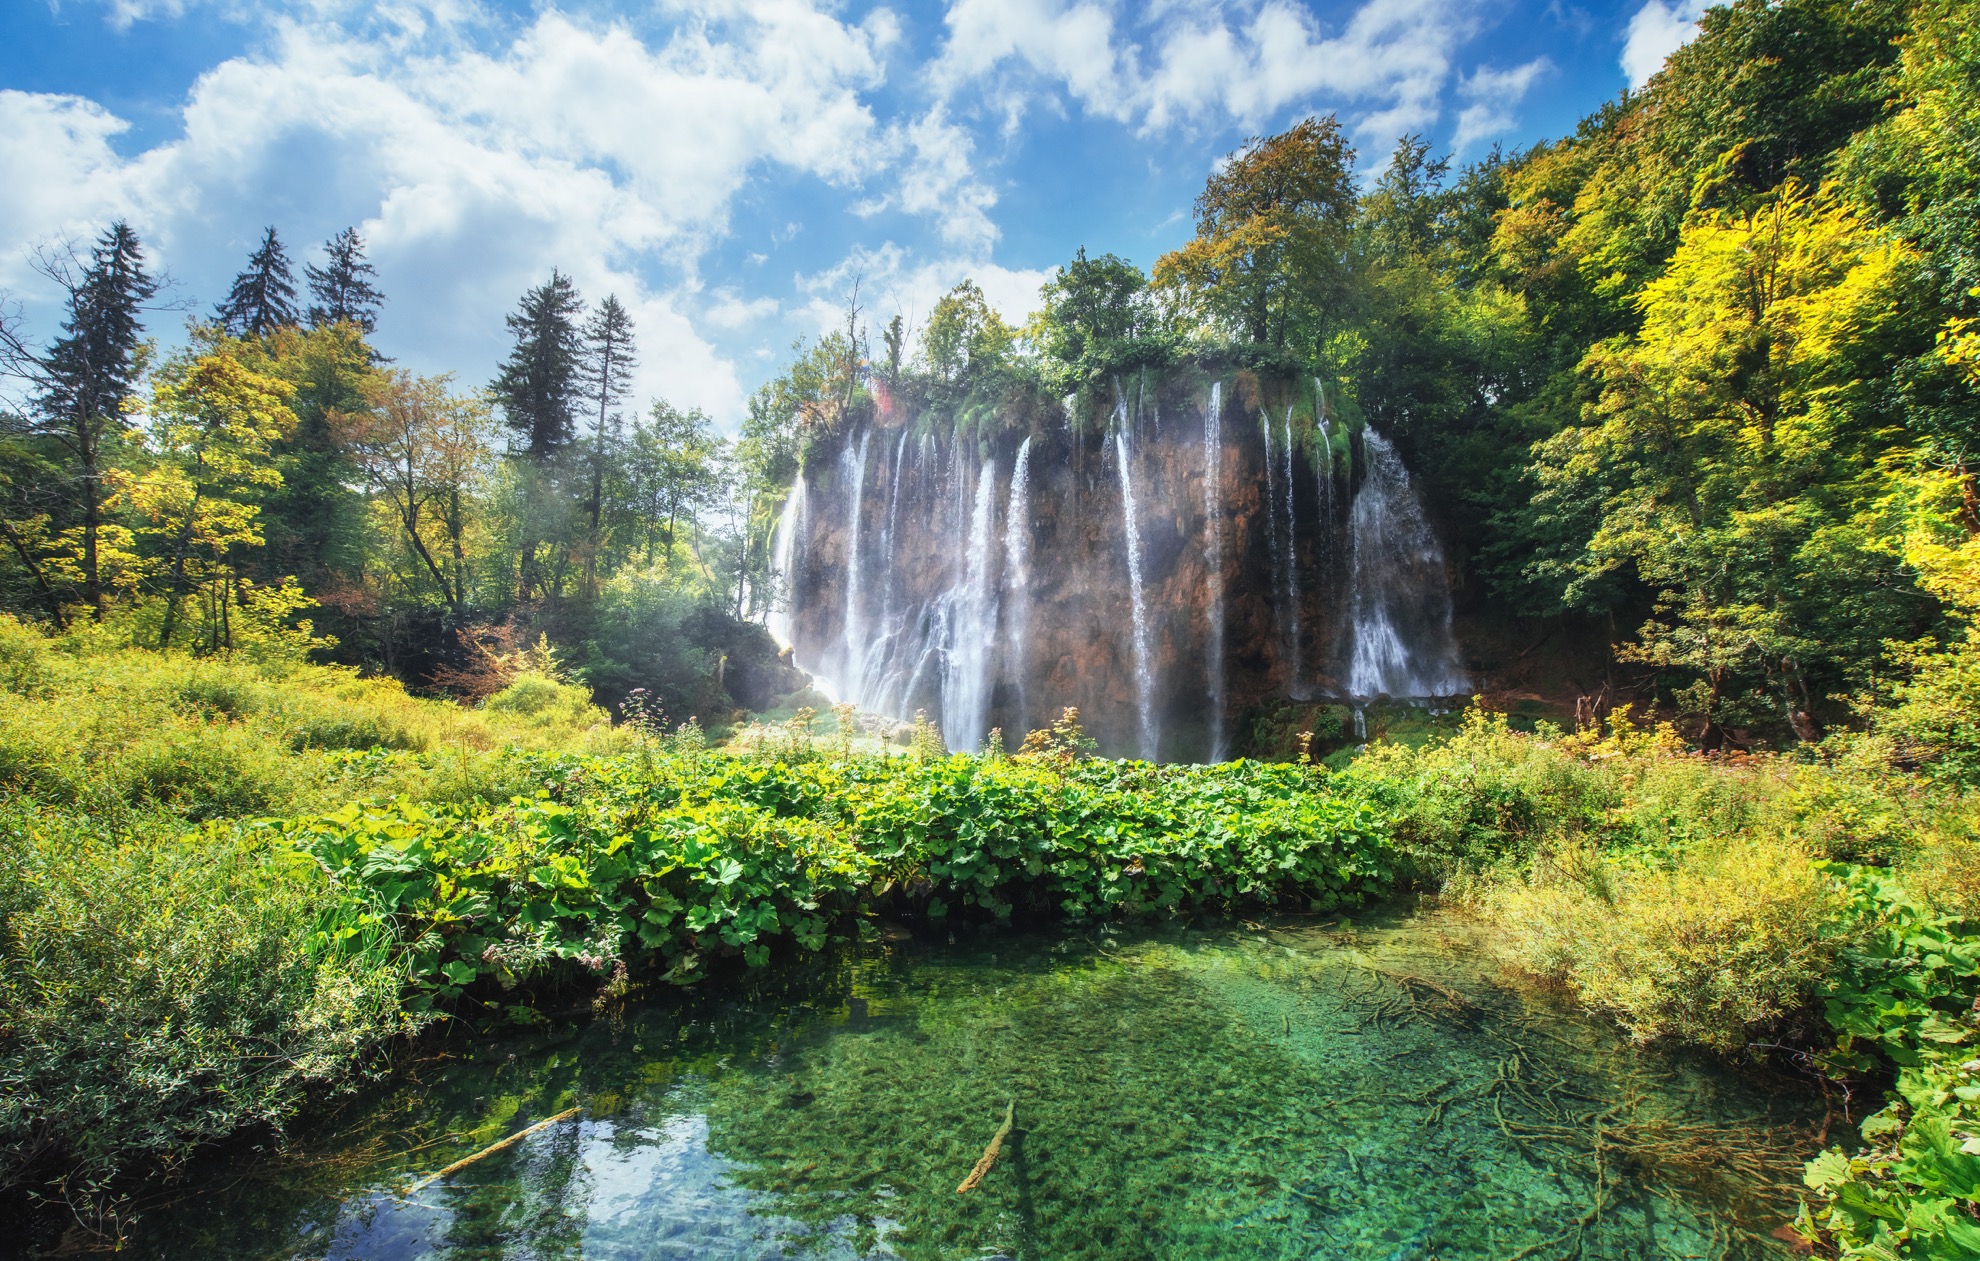 Cascadas se unen a 16 lagos naturales en el impresionante Parque Nacional Plitvice Lakes de Croacia - 9